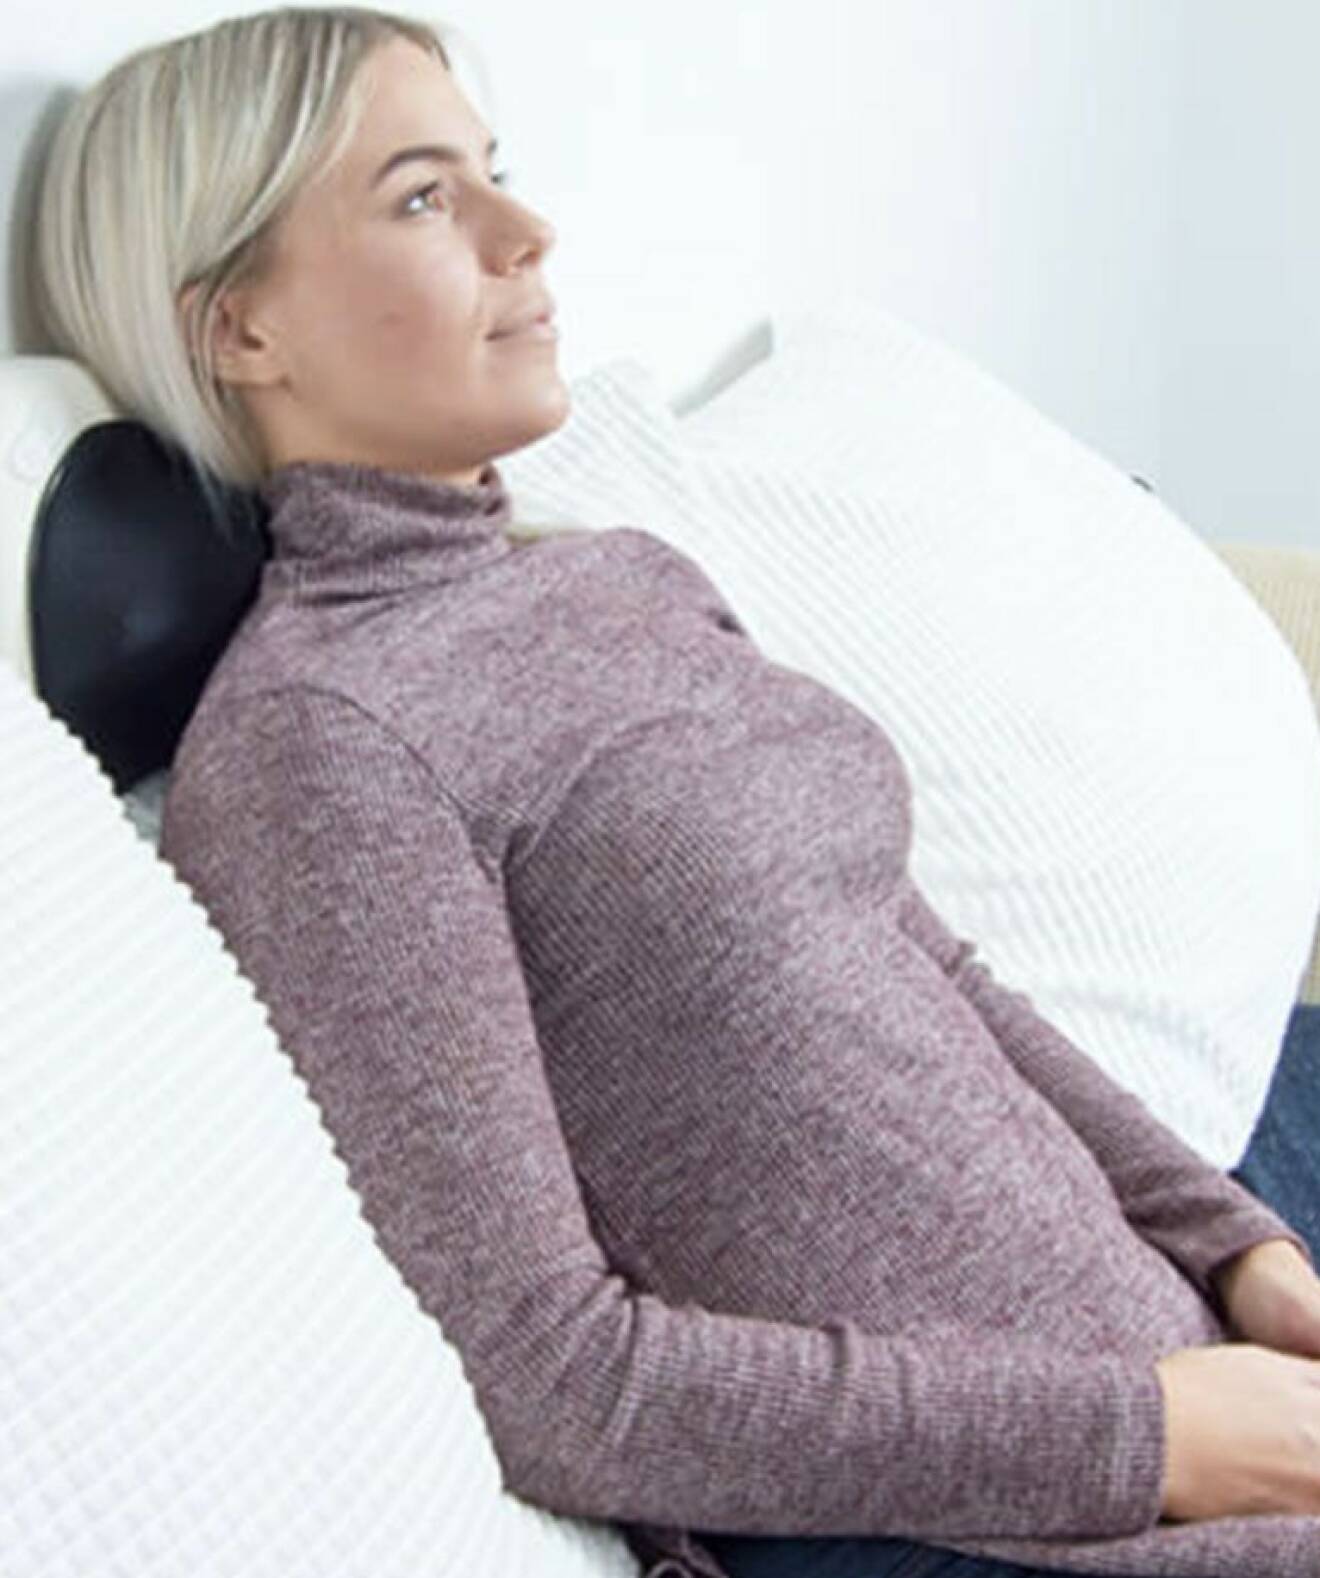 Kvinna sitter i soffan och får massage av en massagekudde.